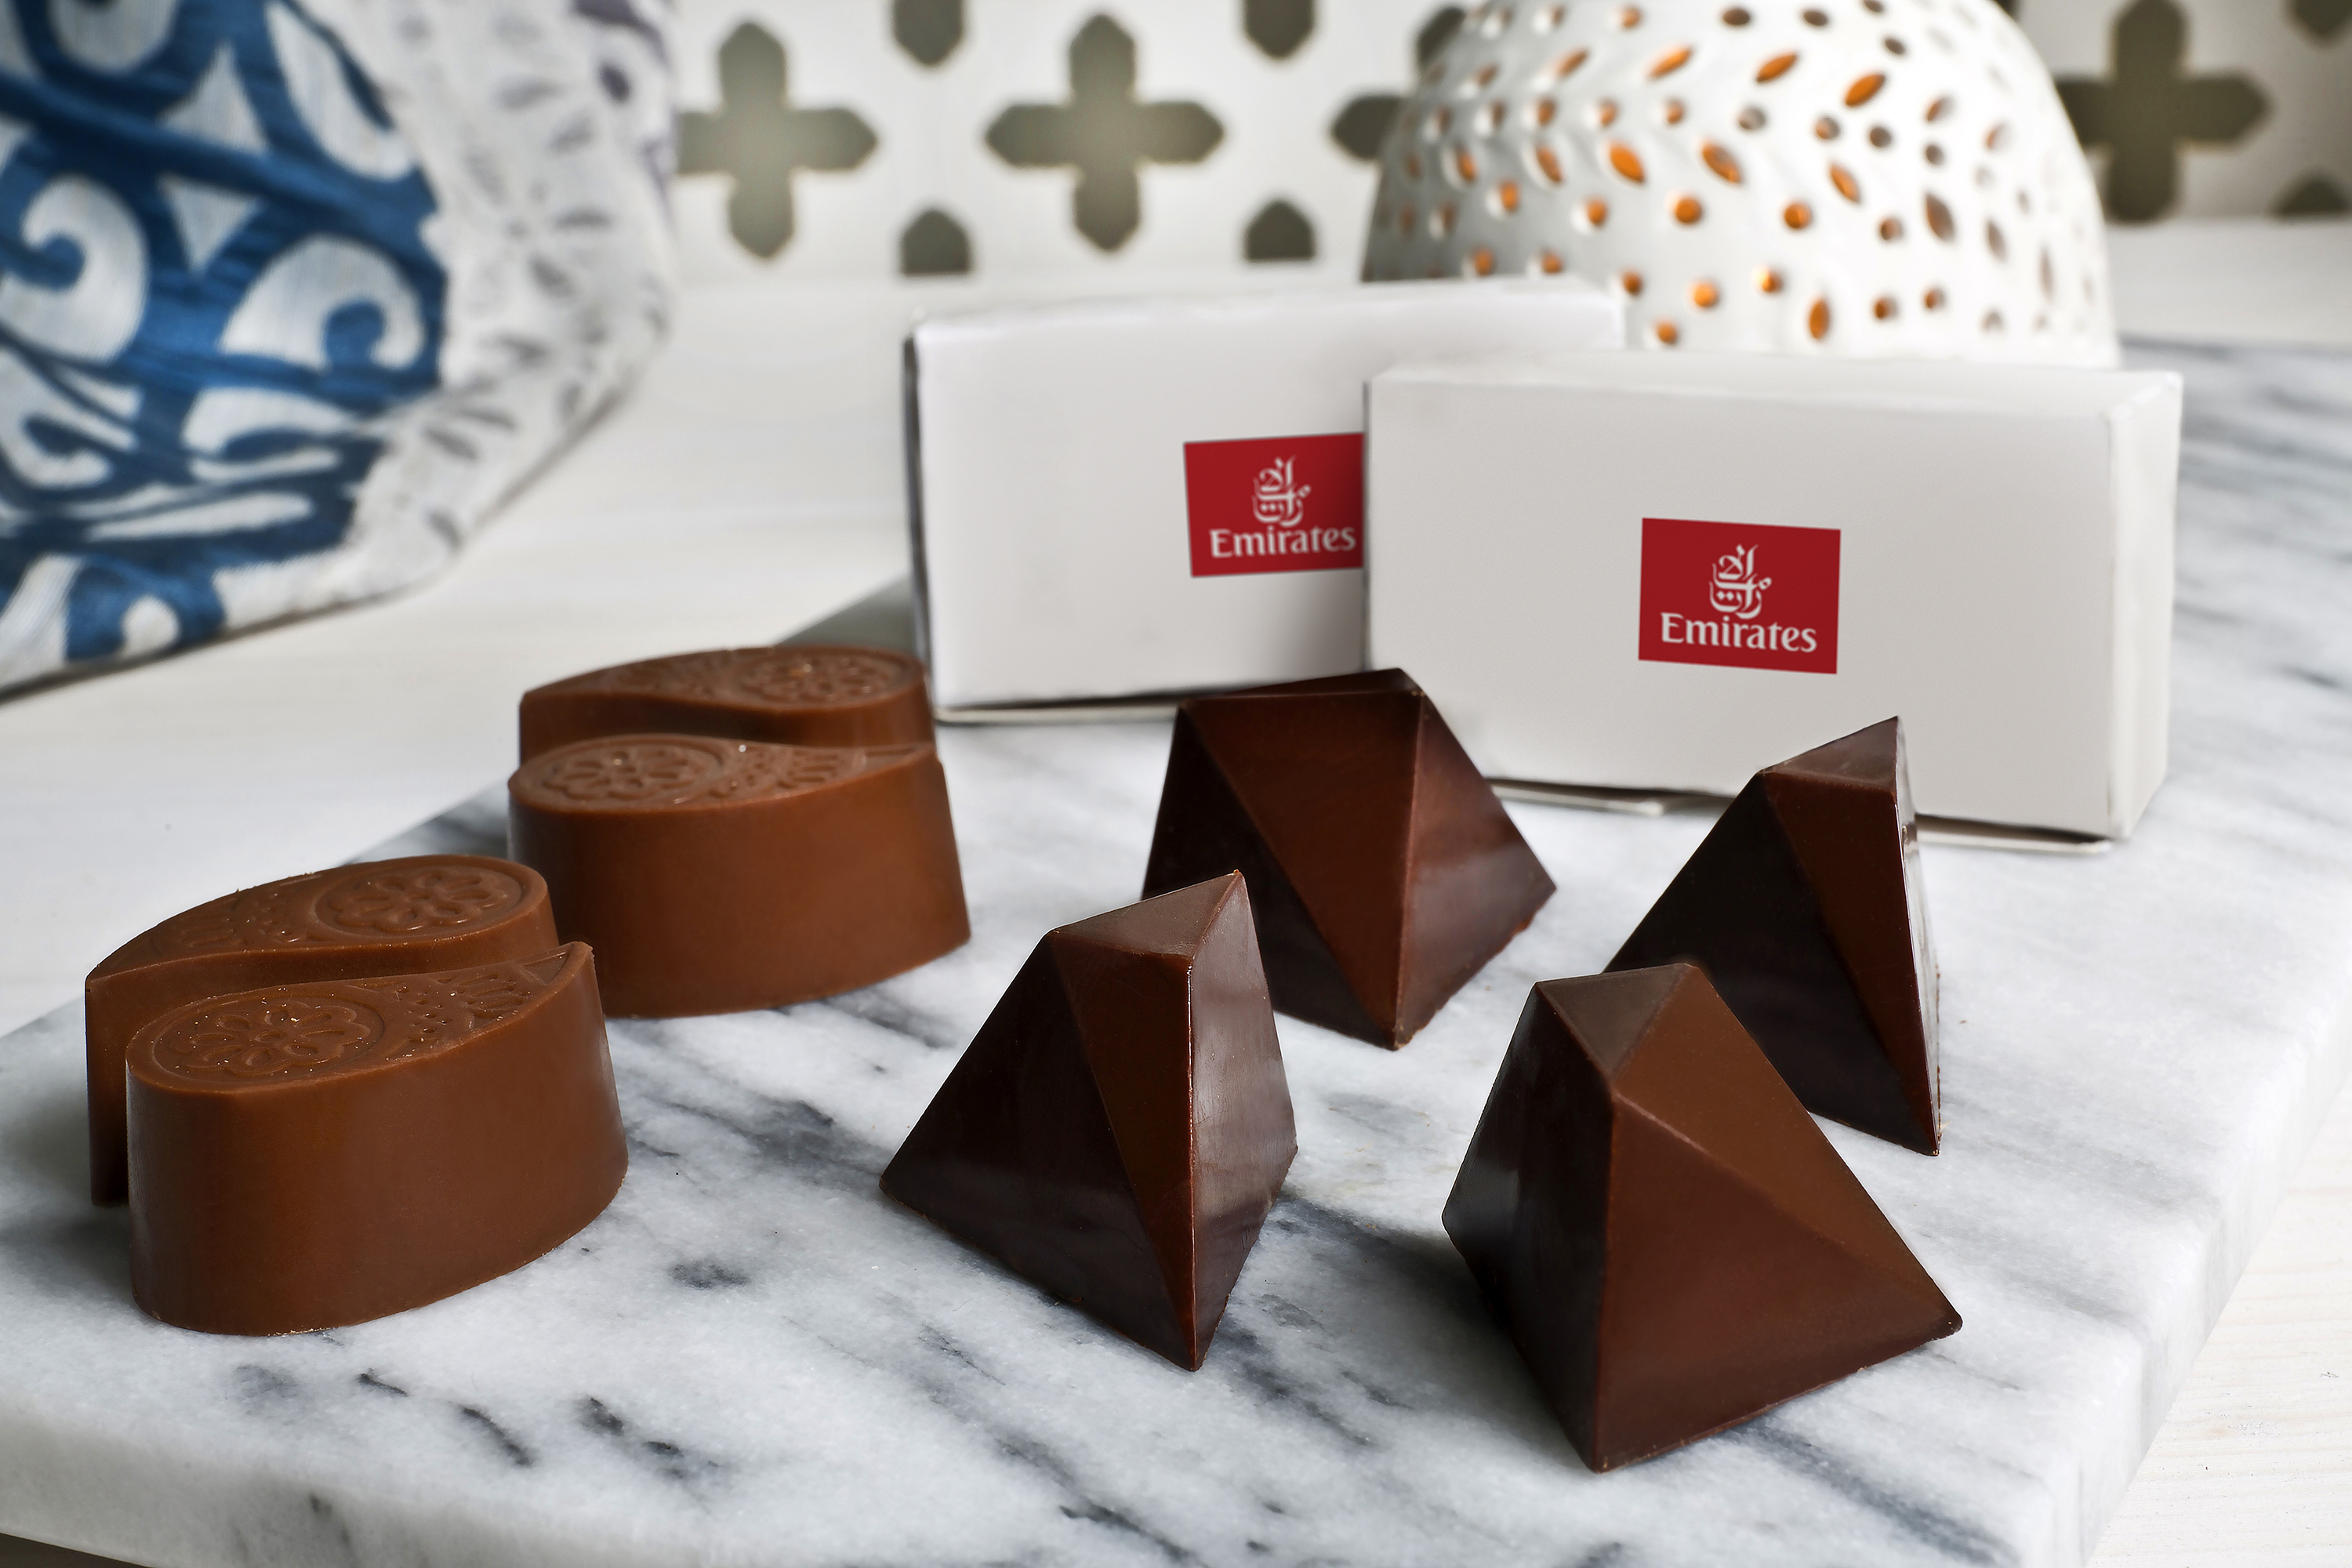 Światowy Dzień Czekolady: Linie Emirates przewożą ponad 11 mln kawałków czekolady